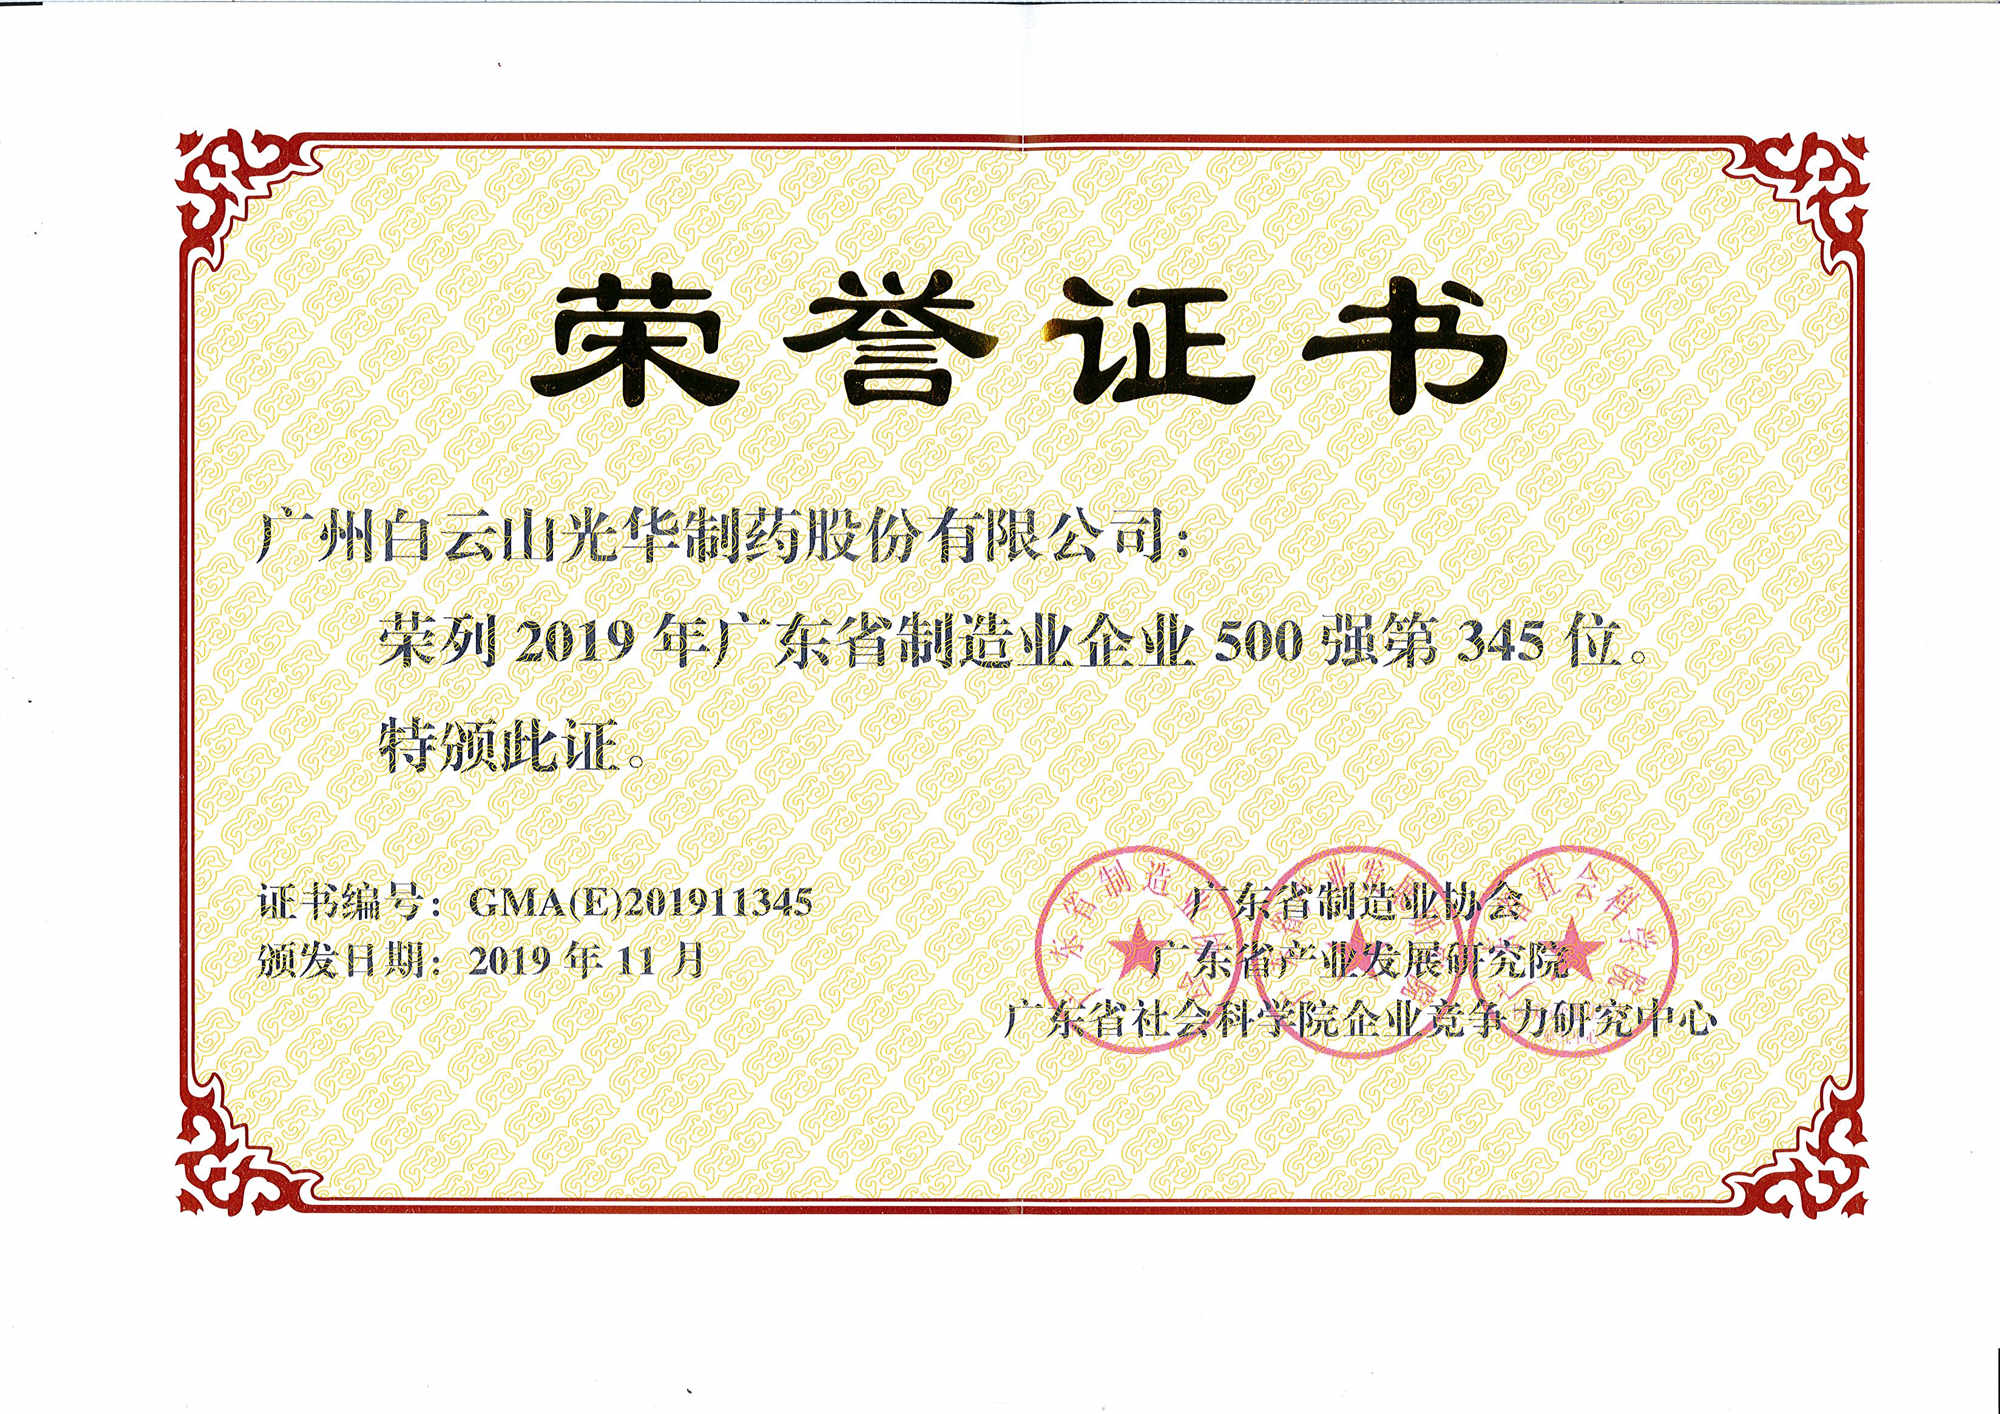 2019年廣東省制造業企業500強第345位